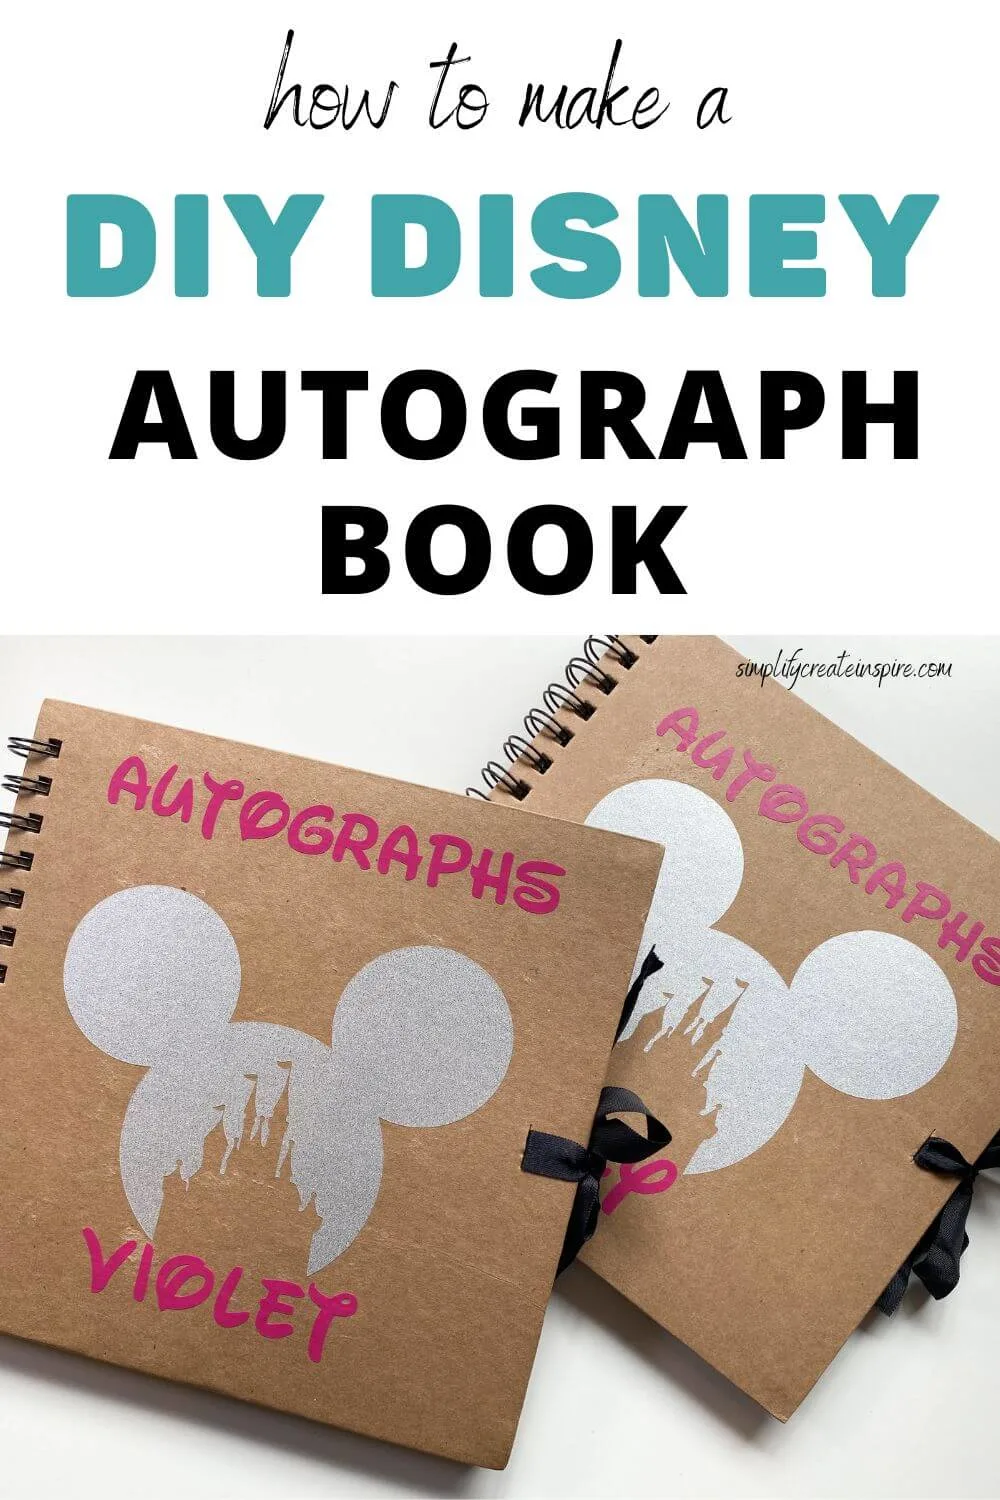 How to make a diy disney autograph book.